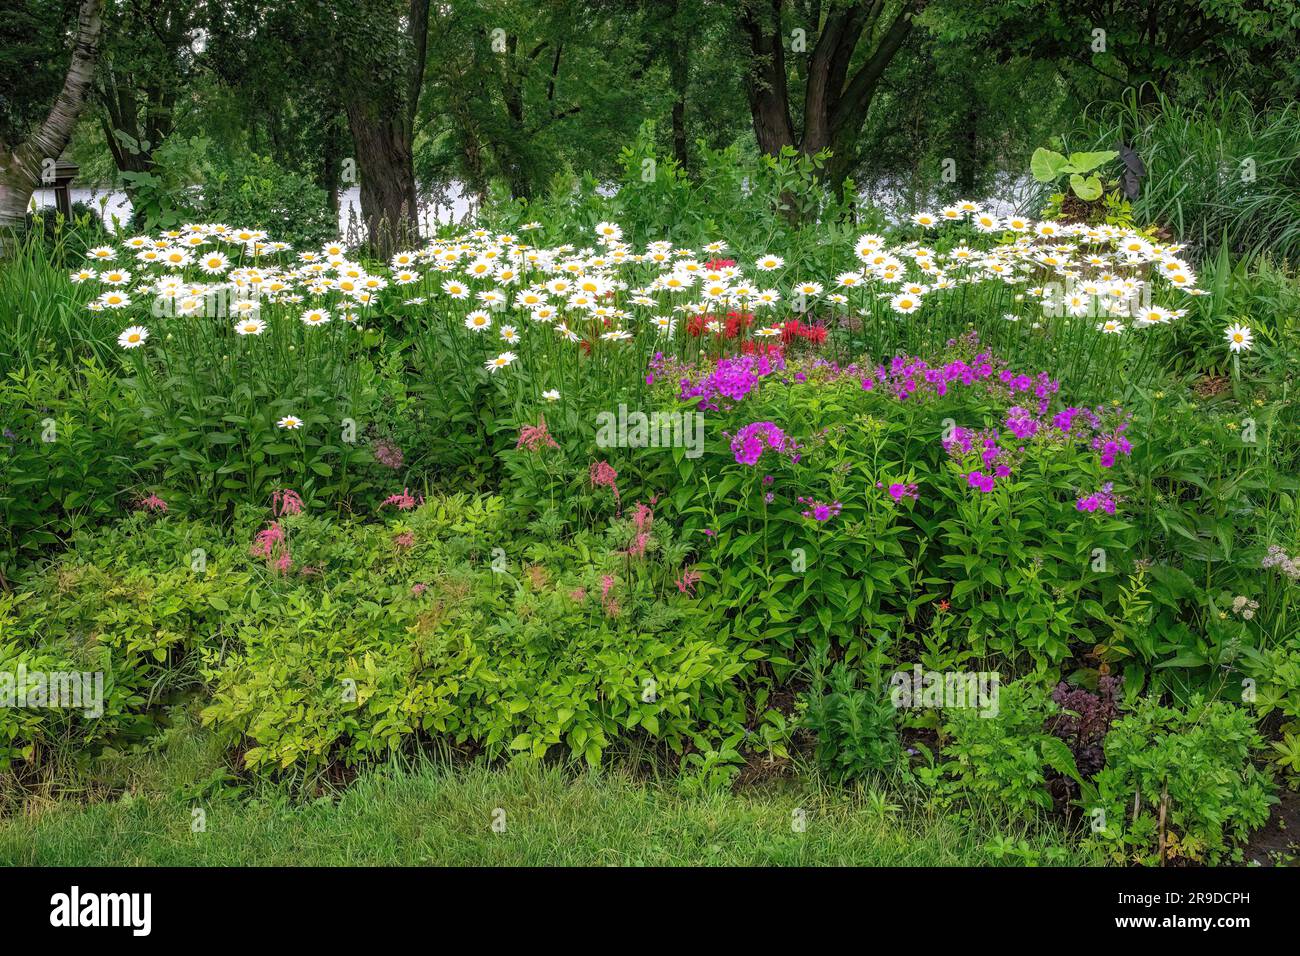 Giardino fiorito con astilbe rosa, phlox viola, margherite bianche e balsamo d'ape rosso o monarda presso i Munsinger Gardens sul fiume Mississippi a St. Cloud, Minnesota Foto Stock